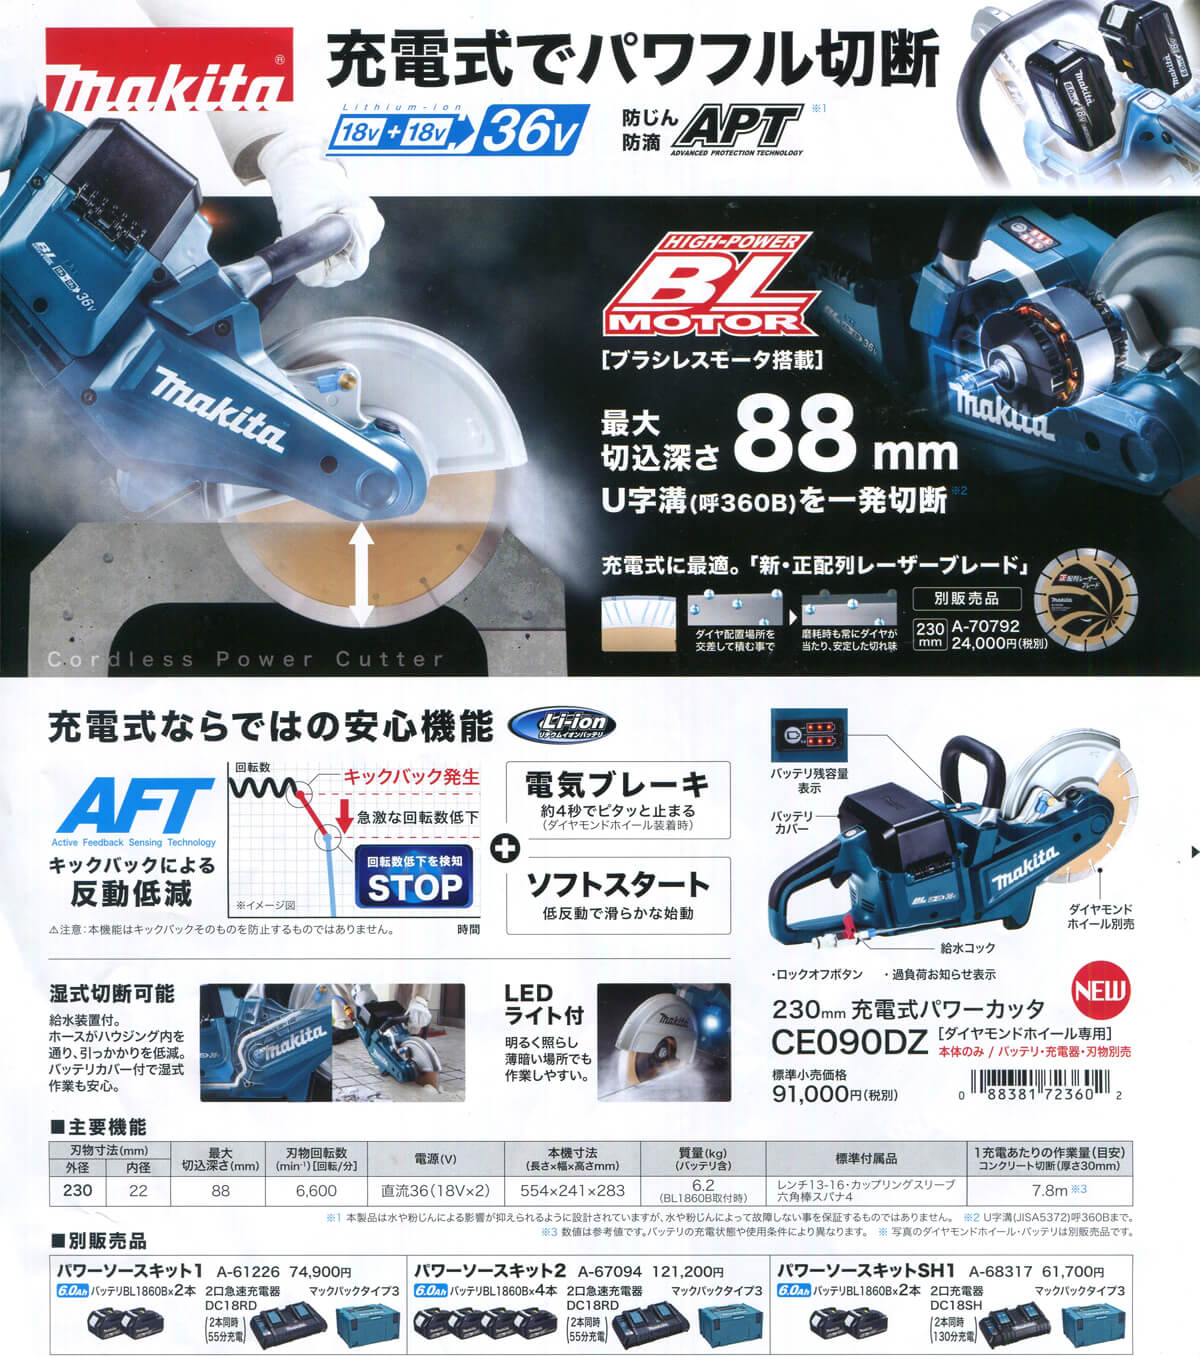 SALE／73%OFF】 マキタ makita CE090DZ 230mm充電式パワーカッター 本体のみ